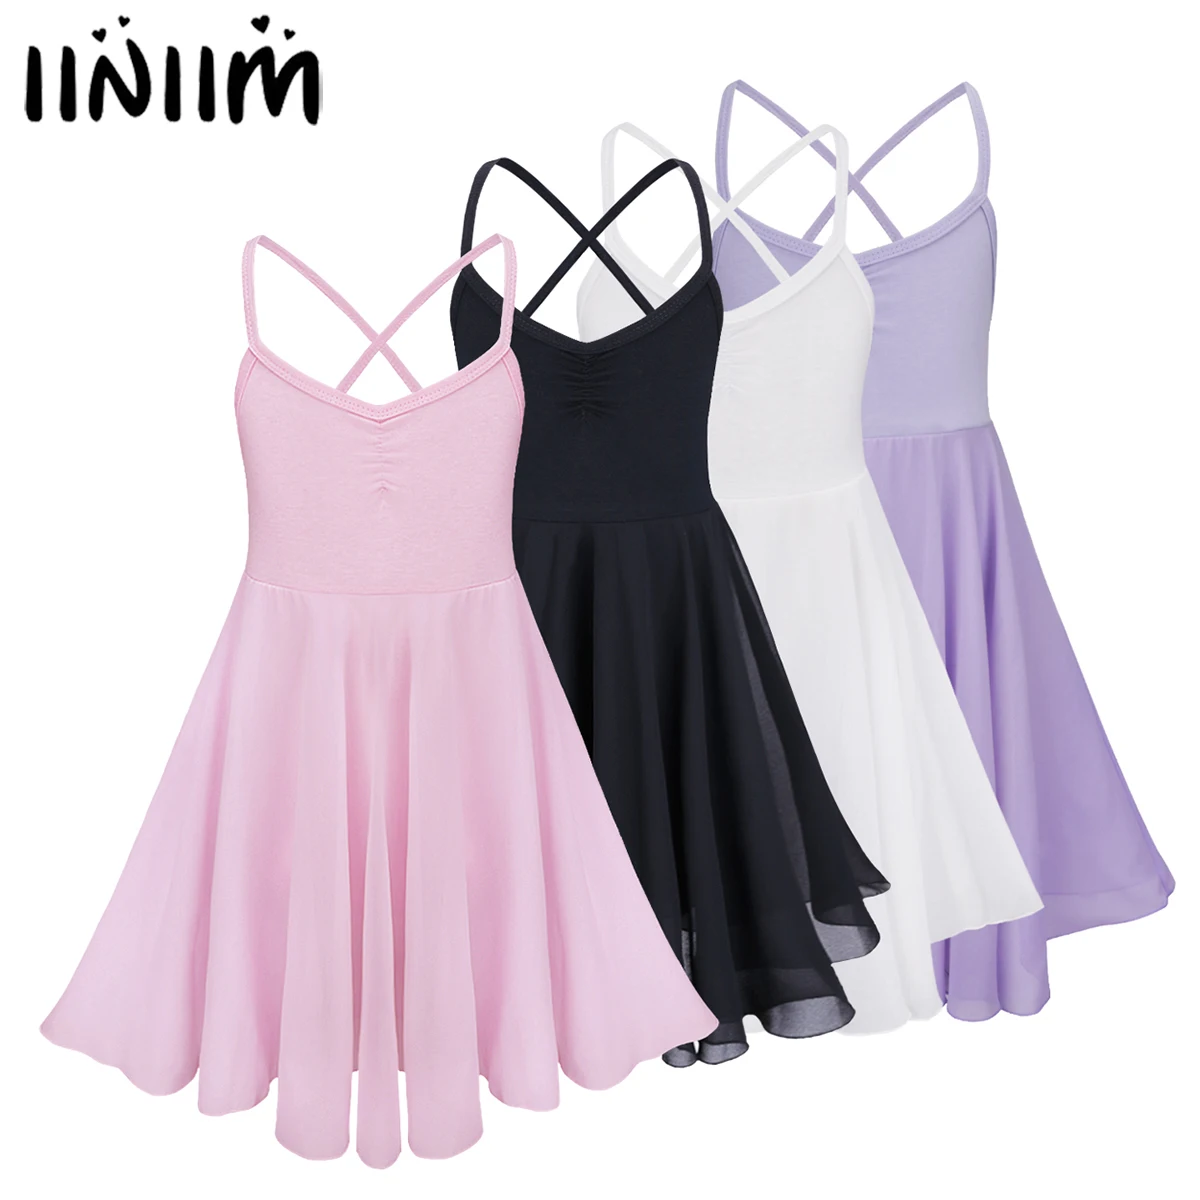 Iiniim/шифоновое платье для балета, класса, балерины, гимнастического трико для девочек, подростковые лирические костюмы, балетное платье-пачка